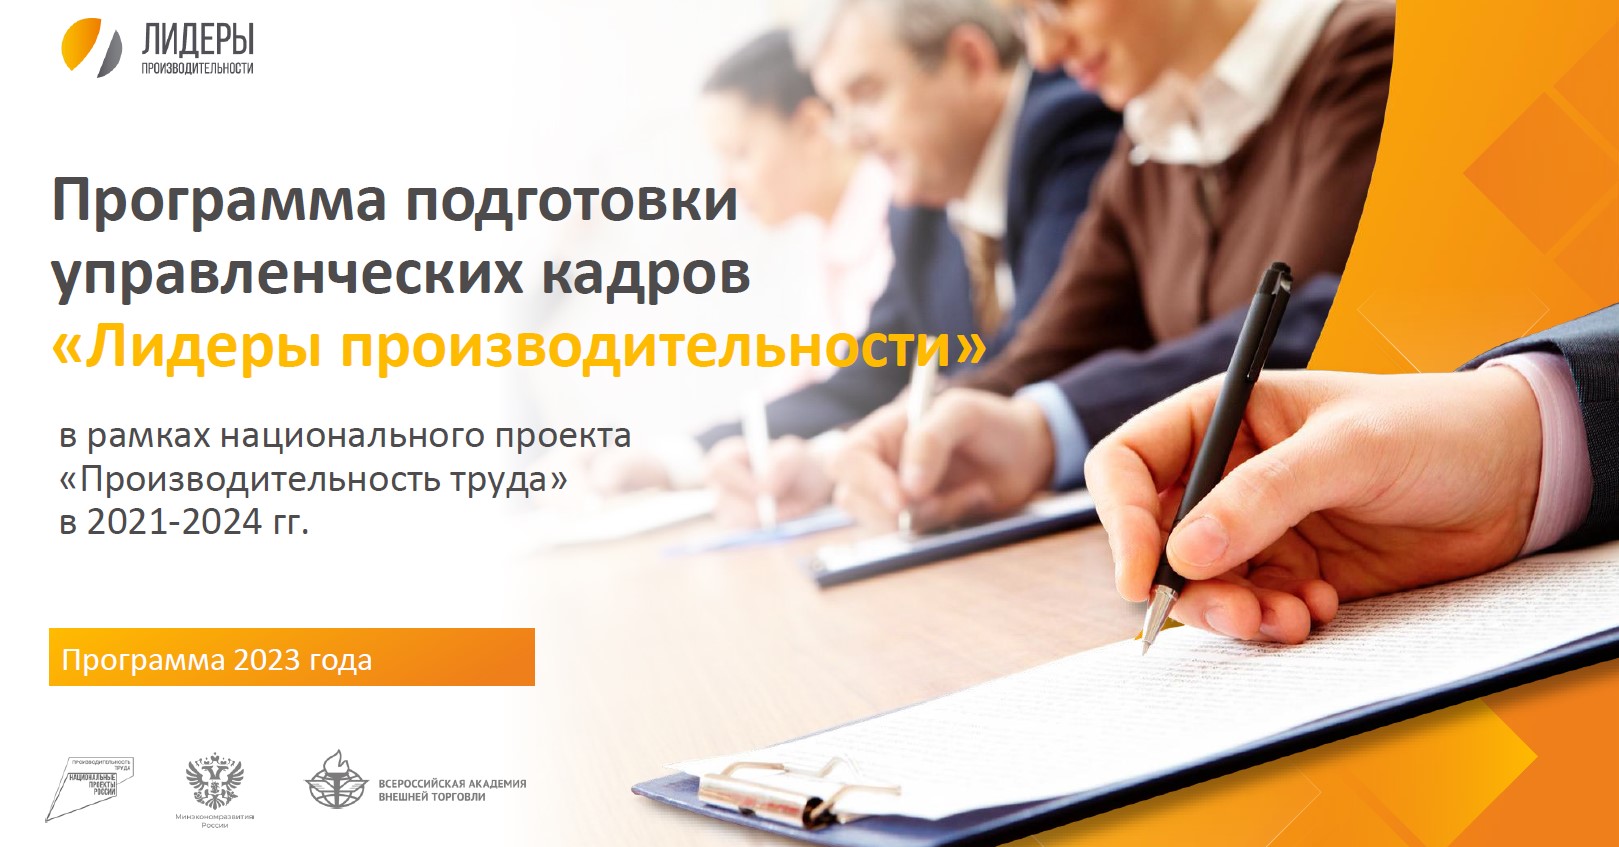 С 15 января открыта регистрация на бесплатную программу подготовки управленческих кадров «Лидеры производительности»